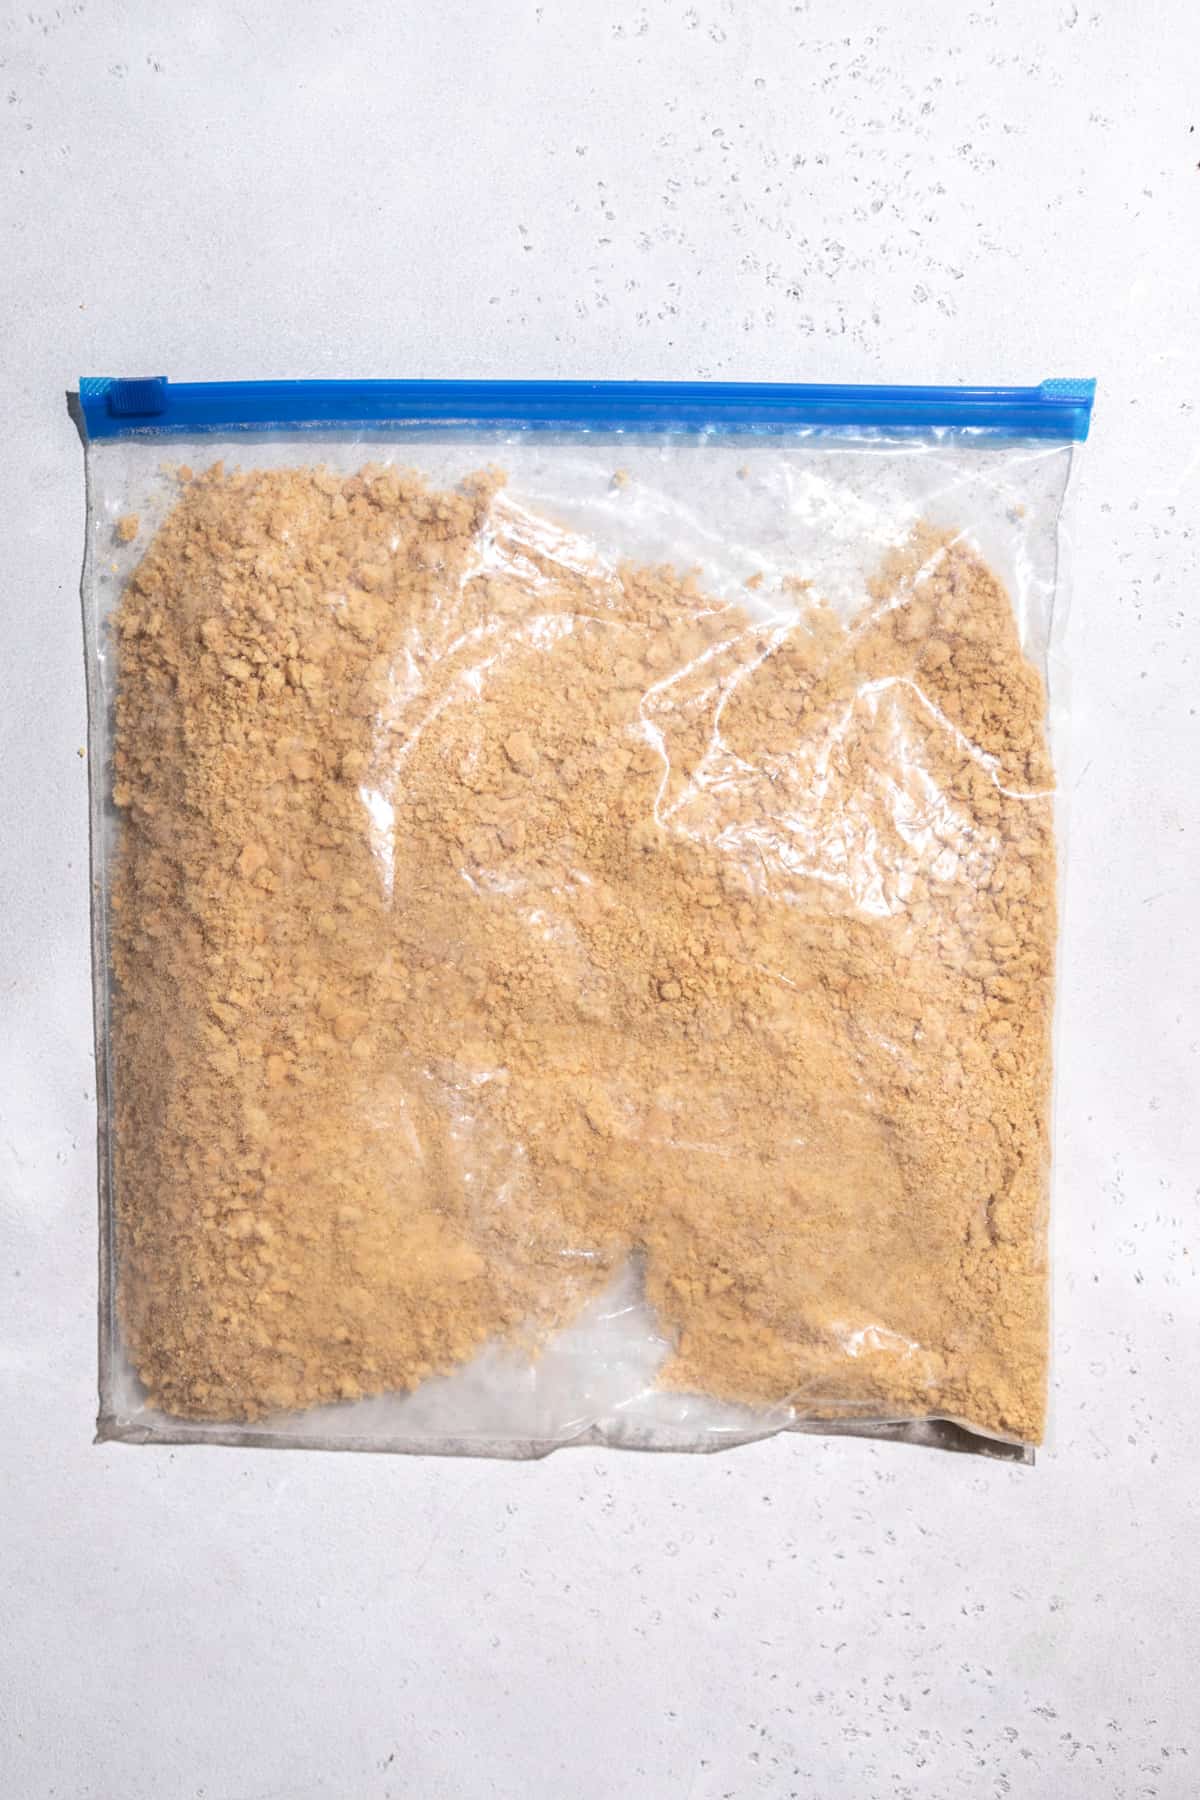 A plastic bag of graham cracker crumbs.